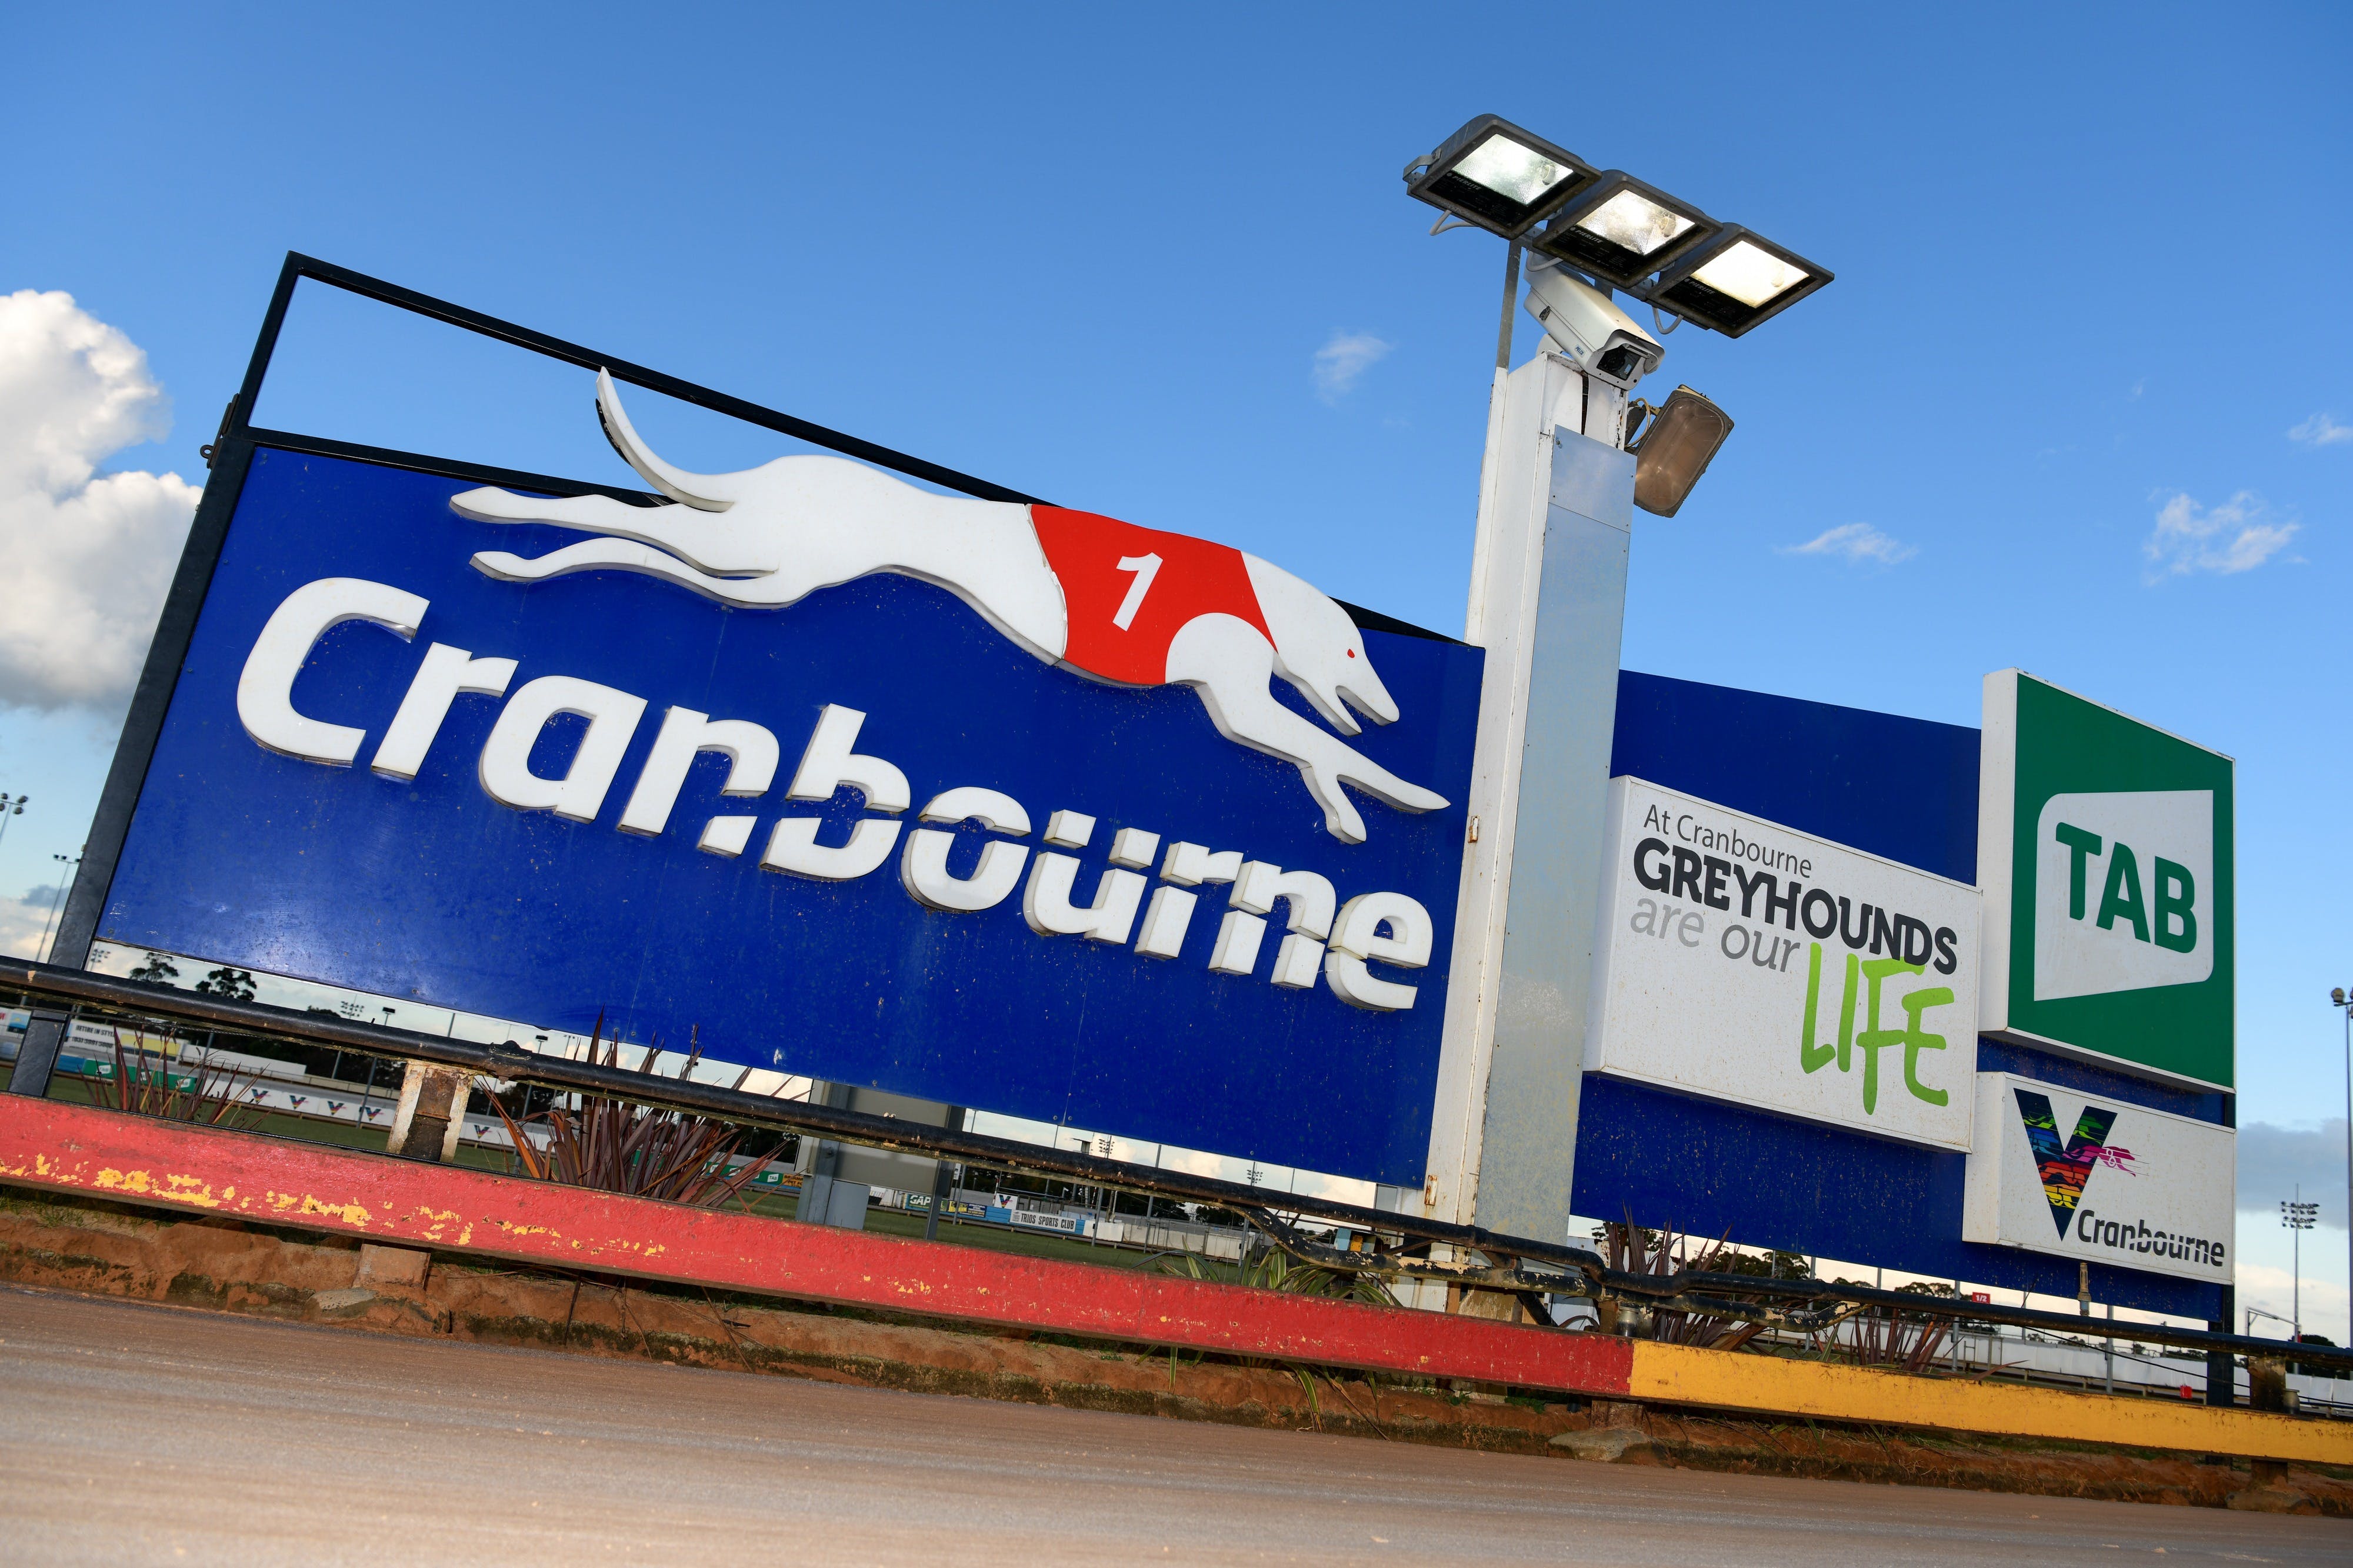 Cranbourne Greyhound Racing Club - Tourism Adelaide